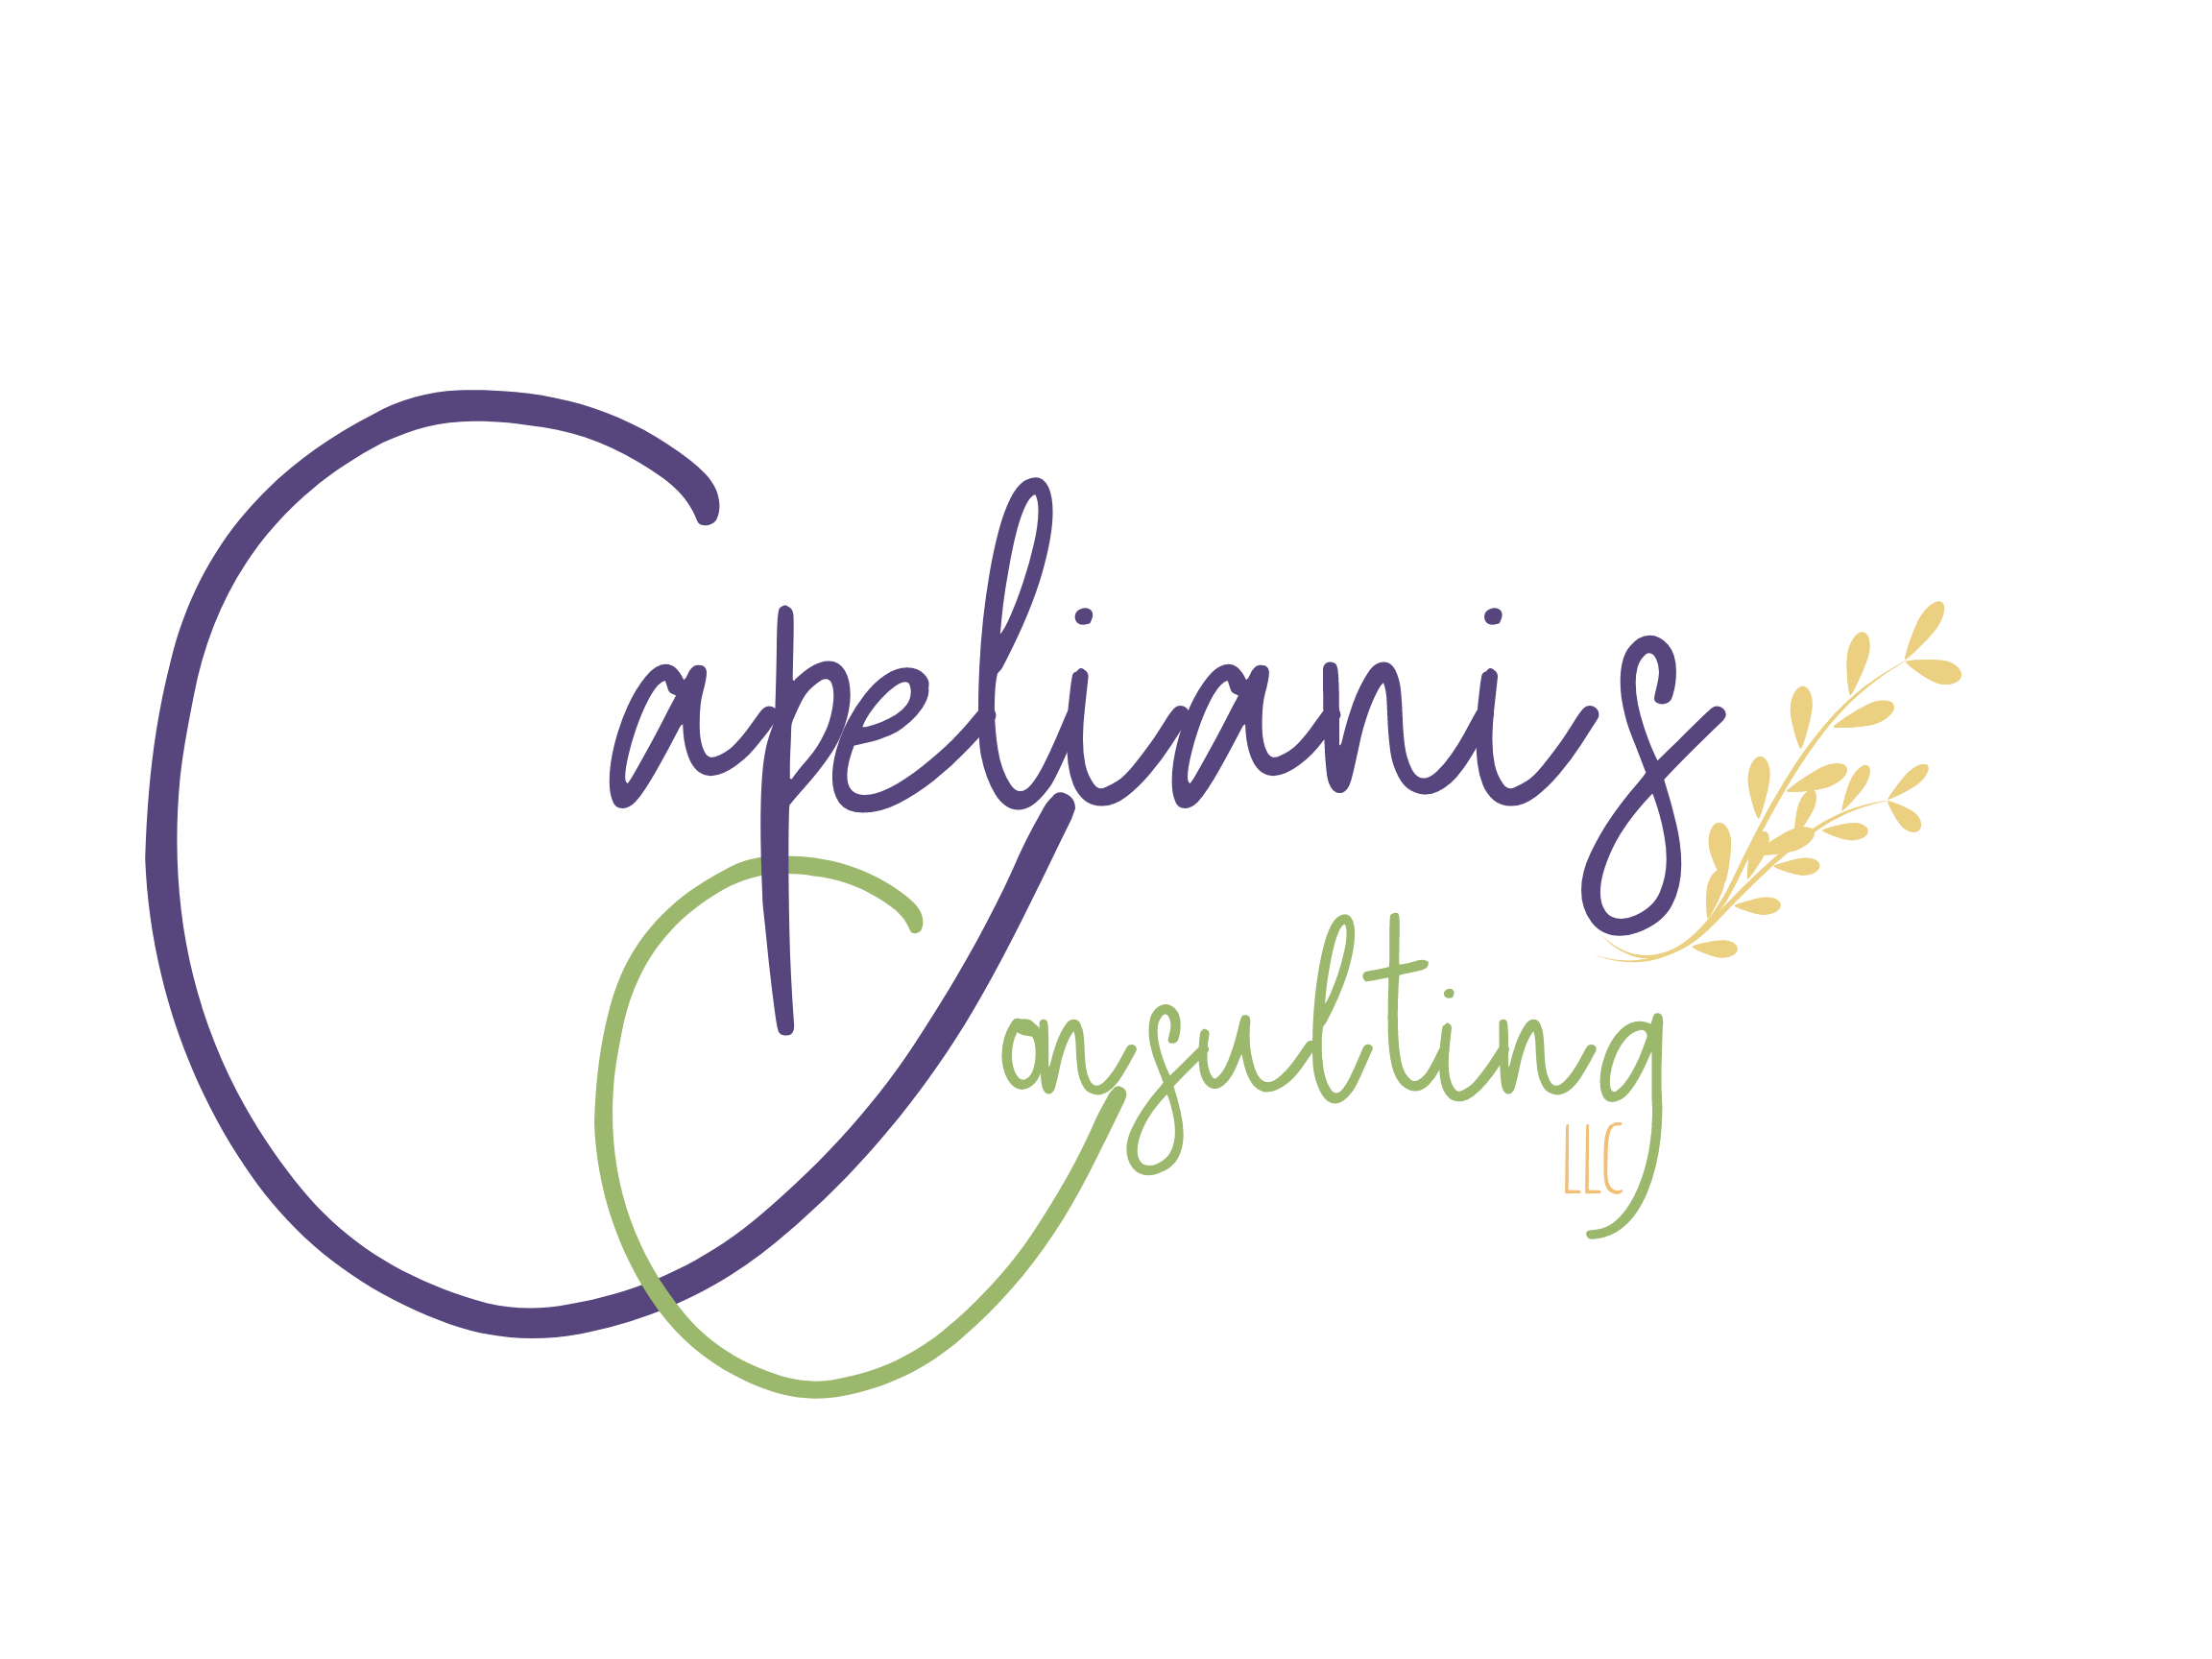 Capelianis Consulting logo